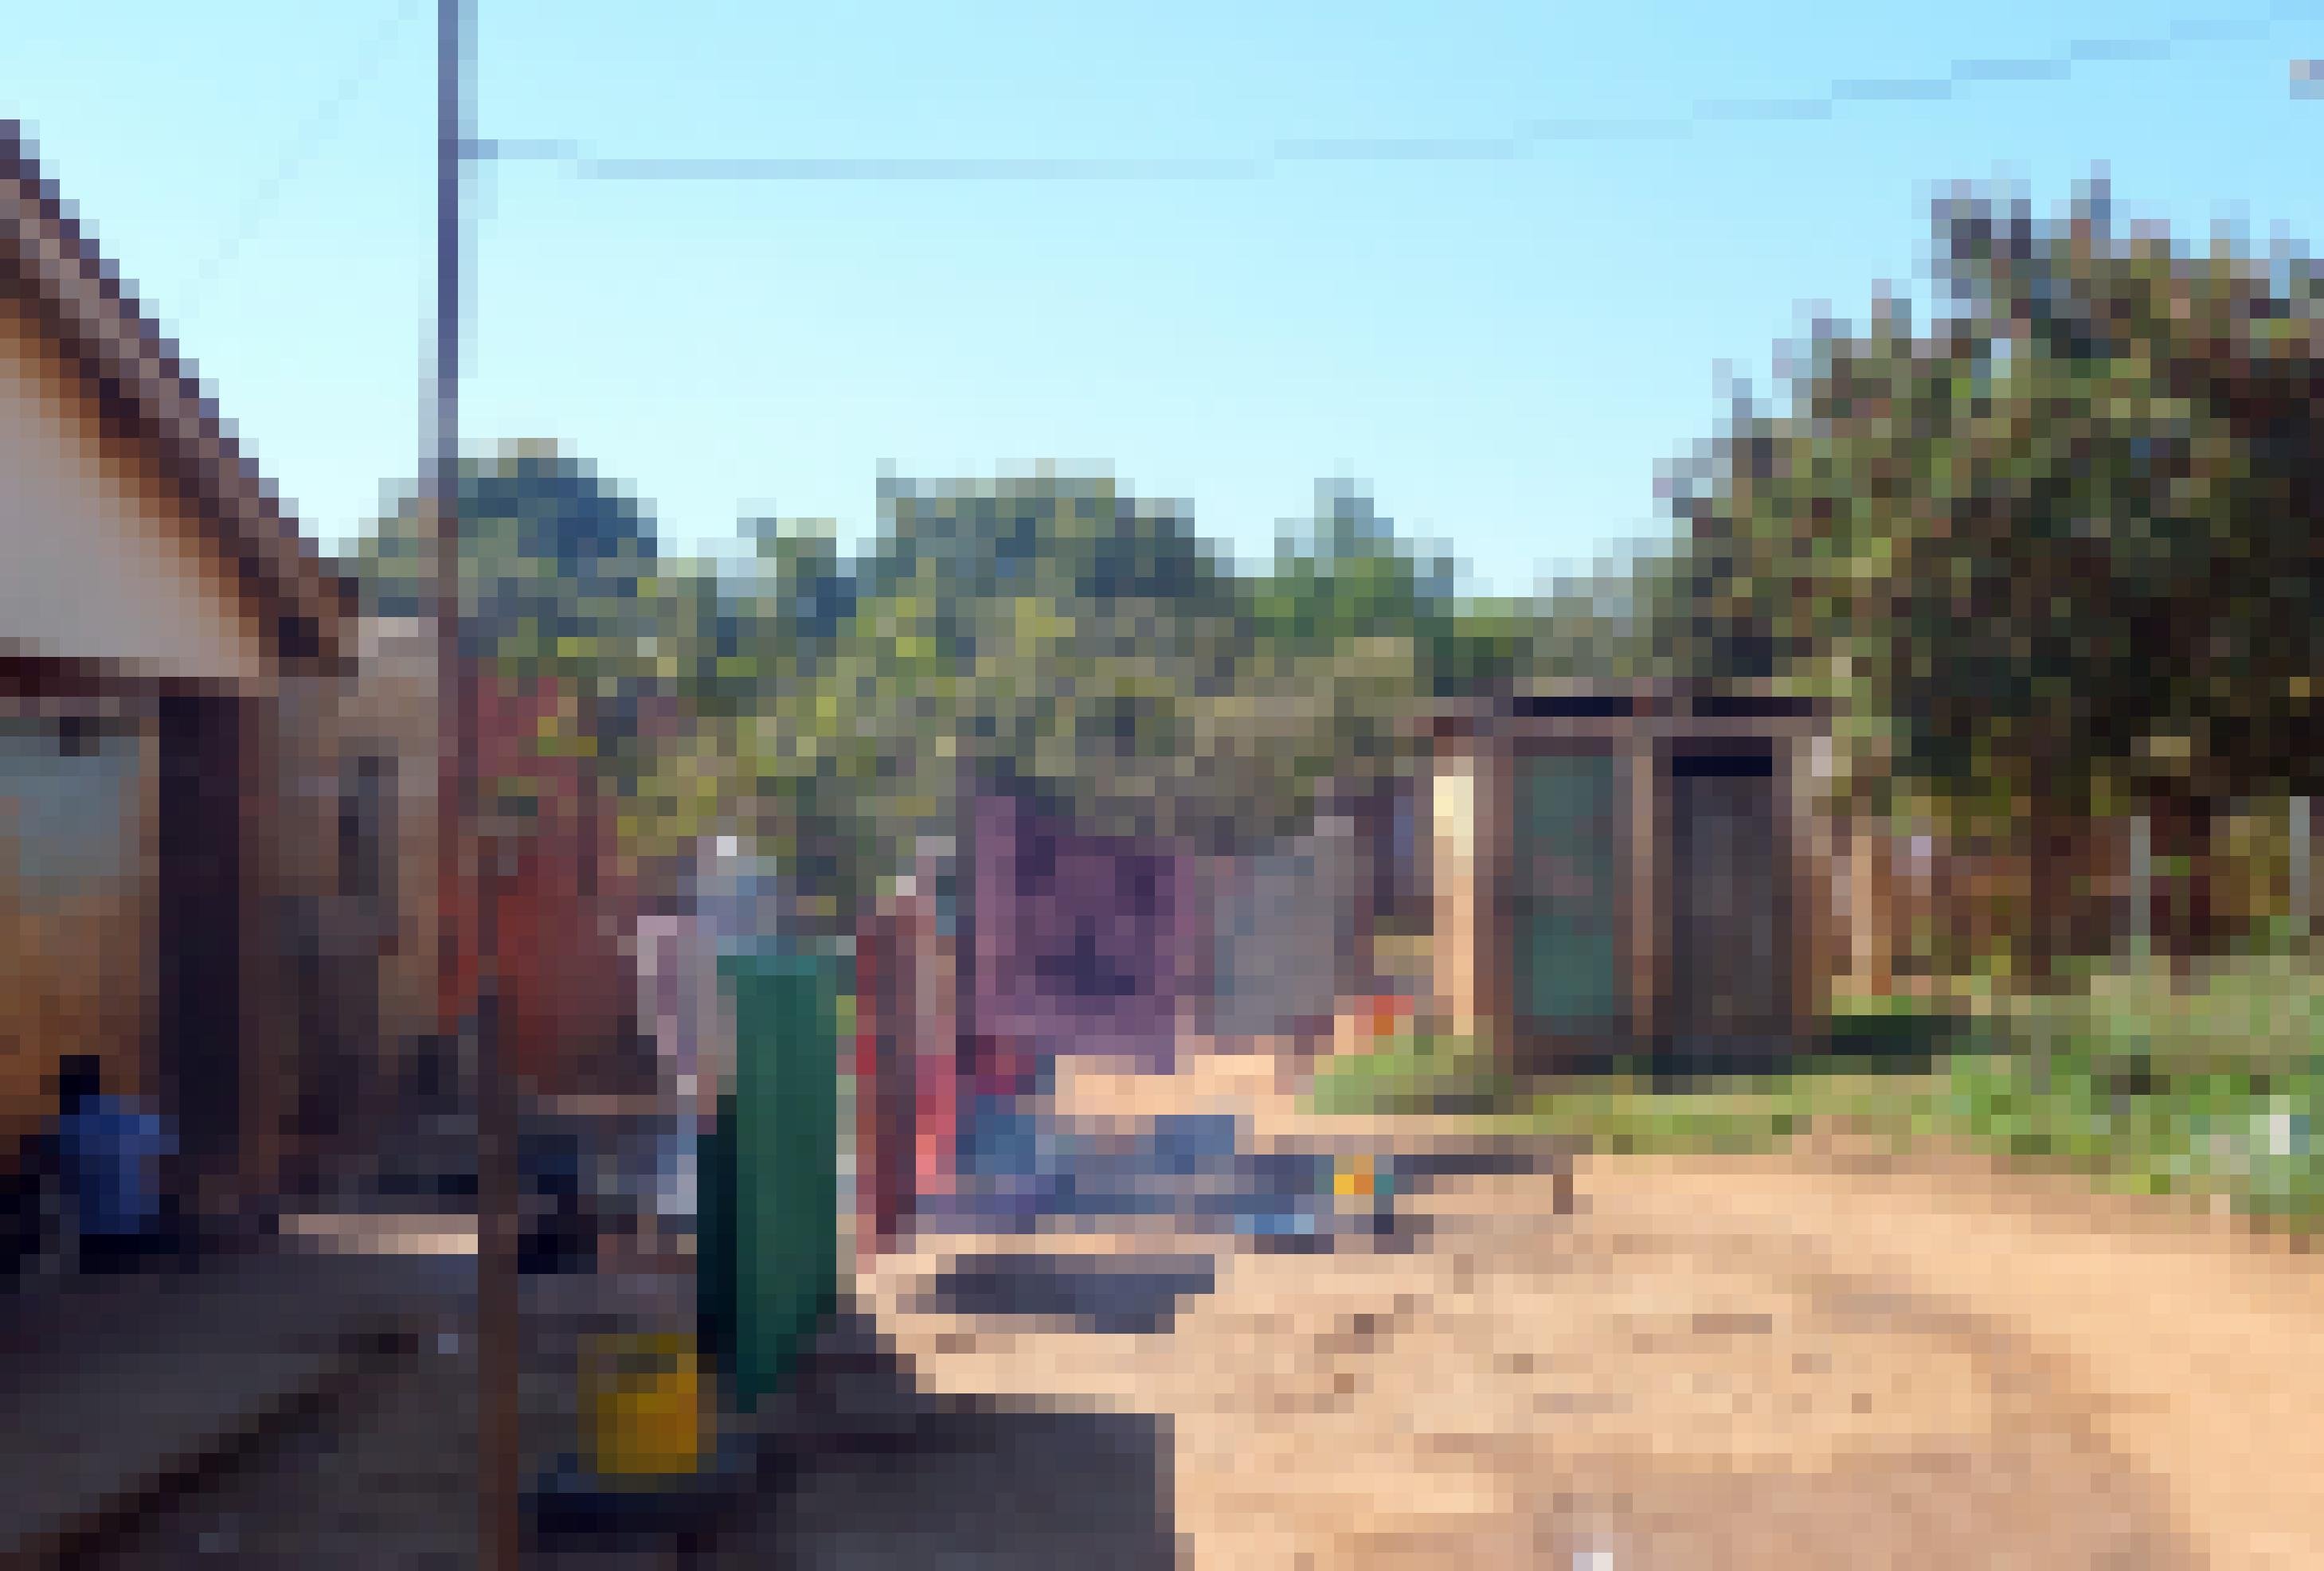 Das Bild zeigt ein kleines Haus mit Klohaeuschen und Waescheleine in einem Armenviertel in Simbabwe. Die Armut ist unuebersehbar.